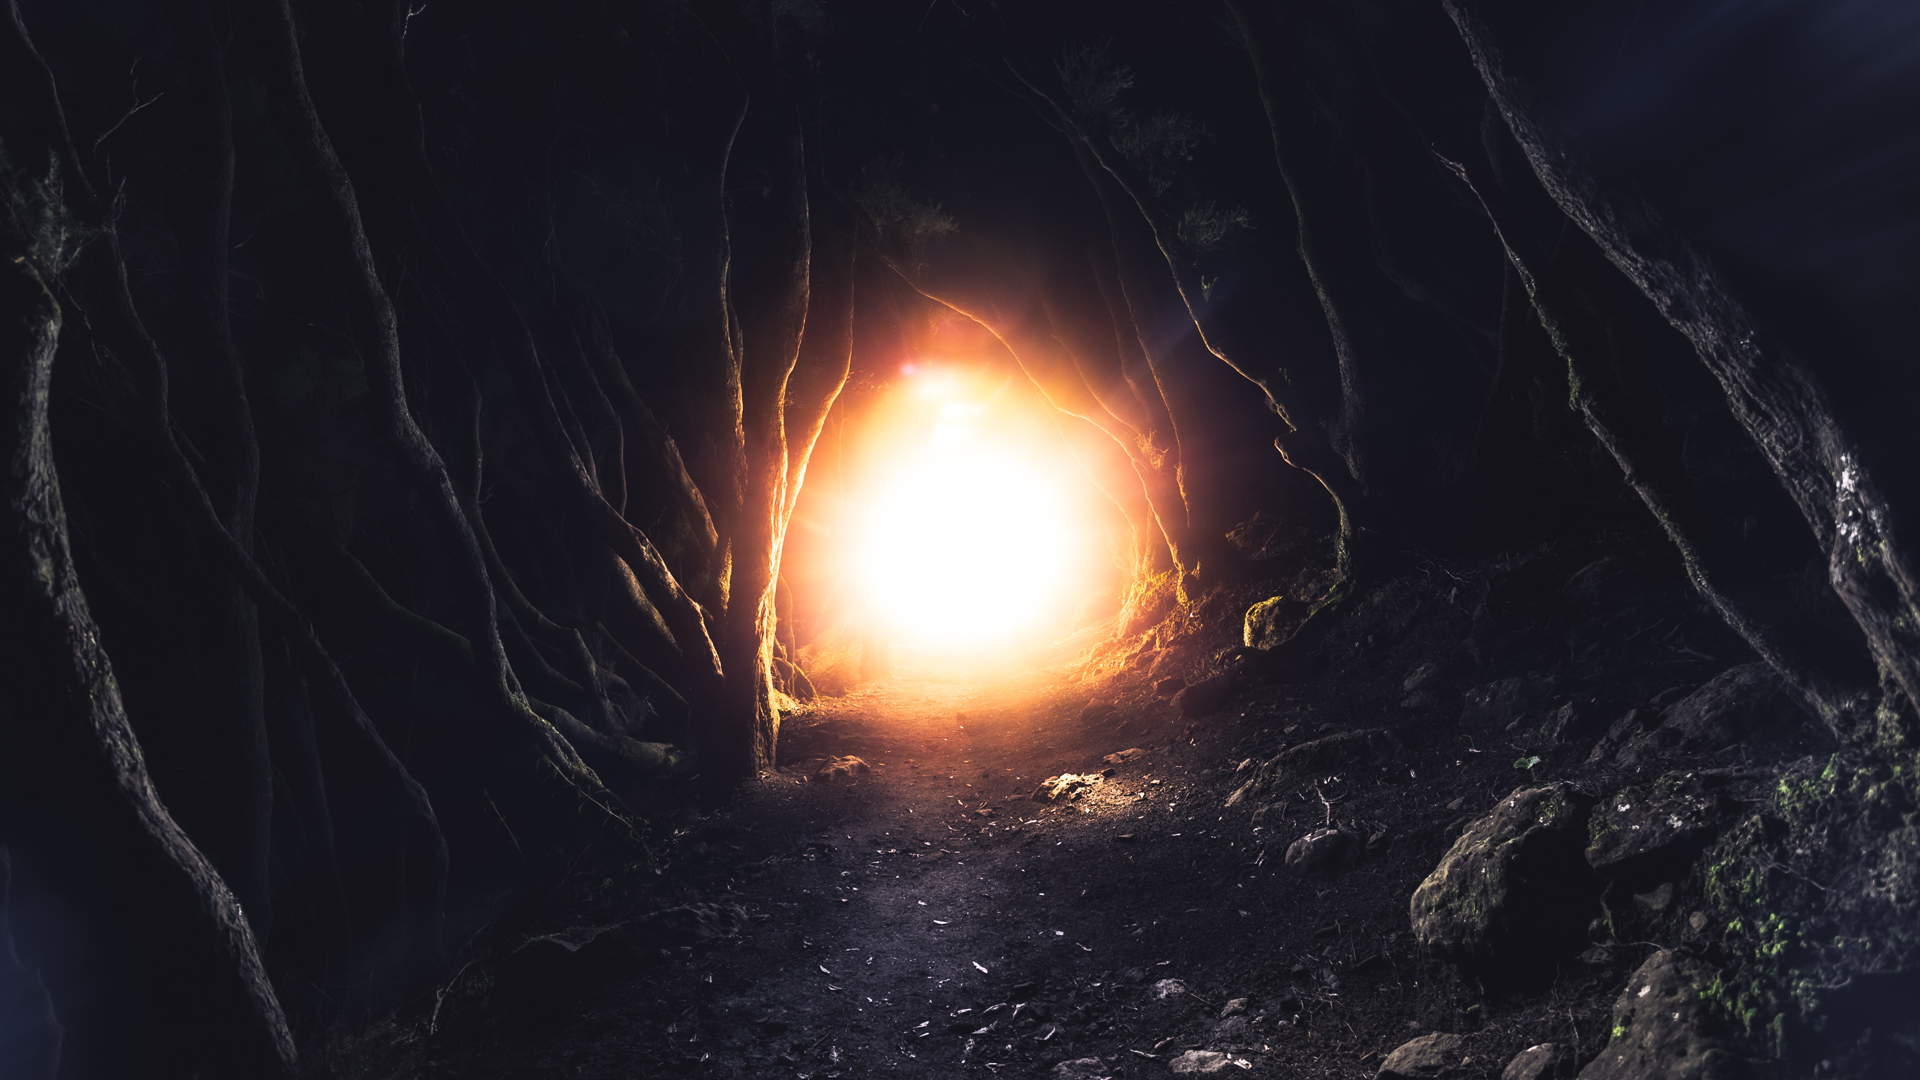 Light in a dark cave